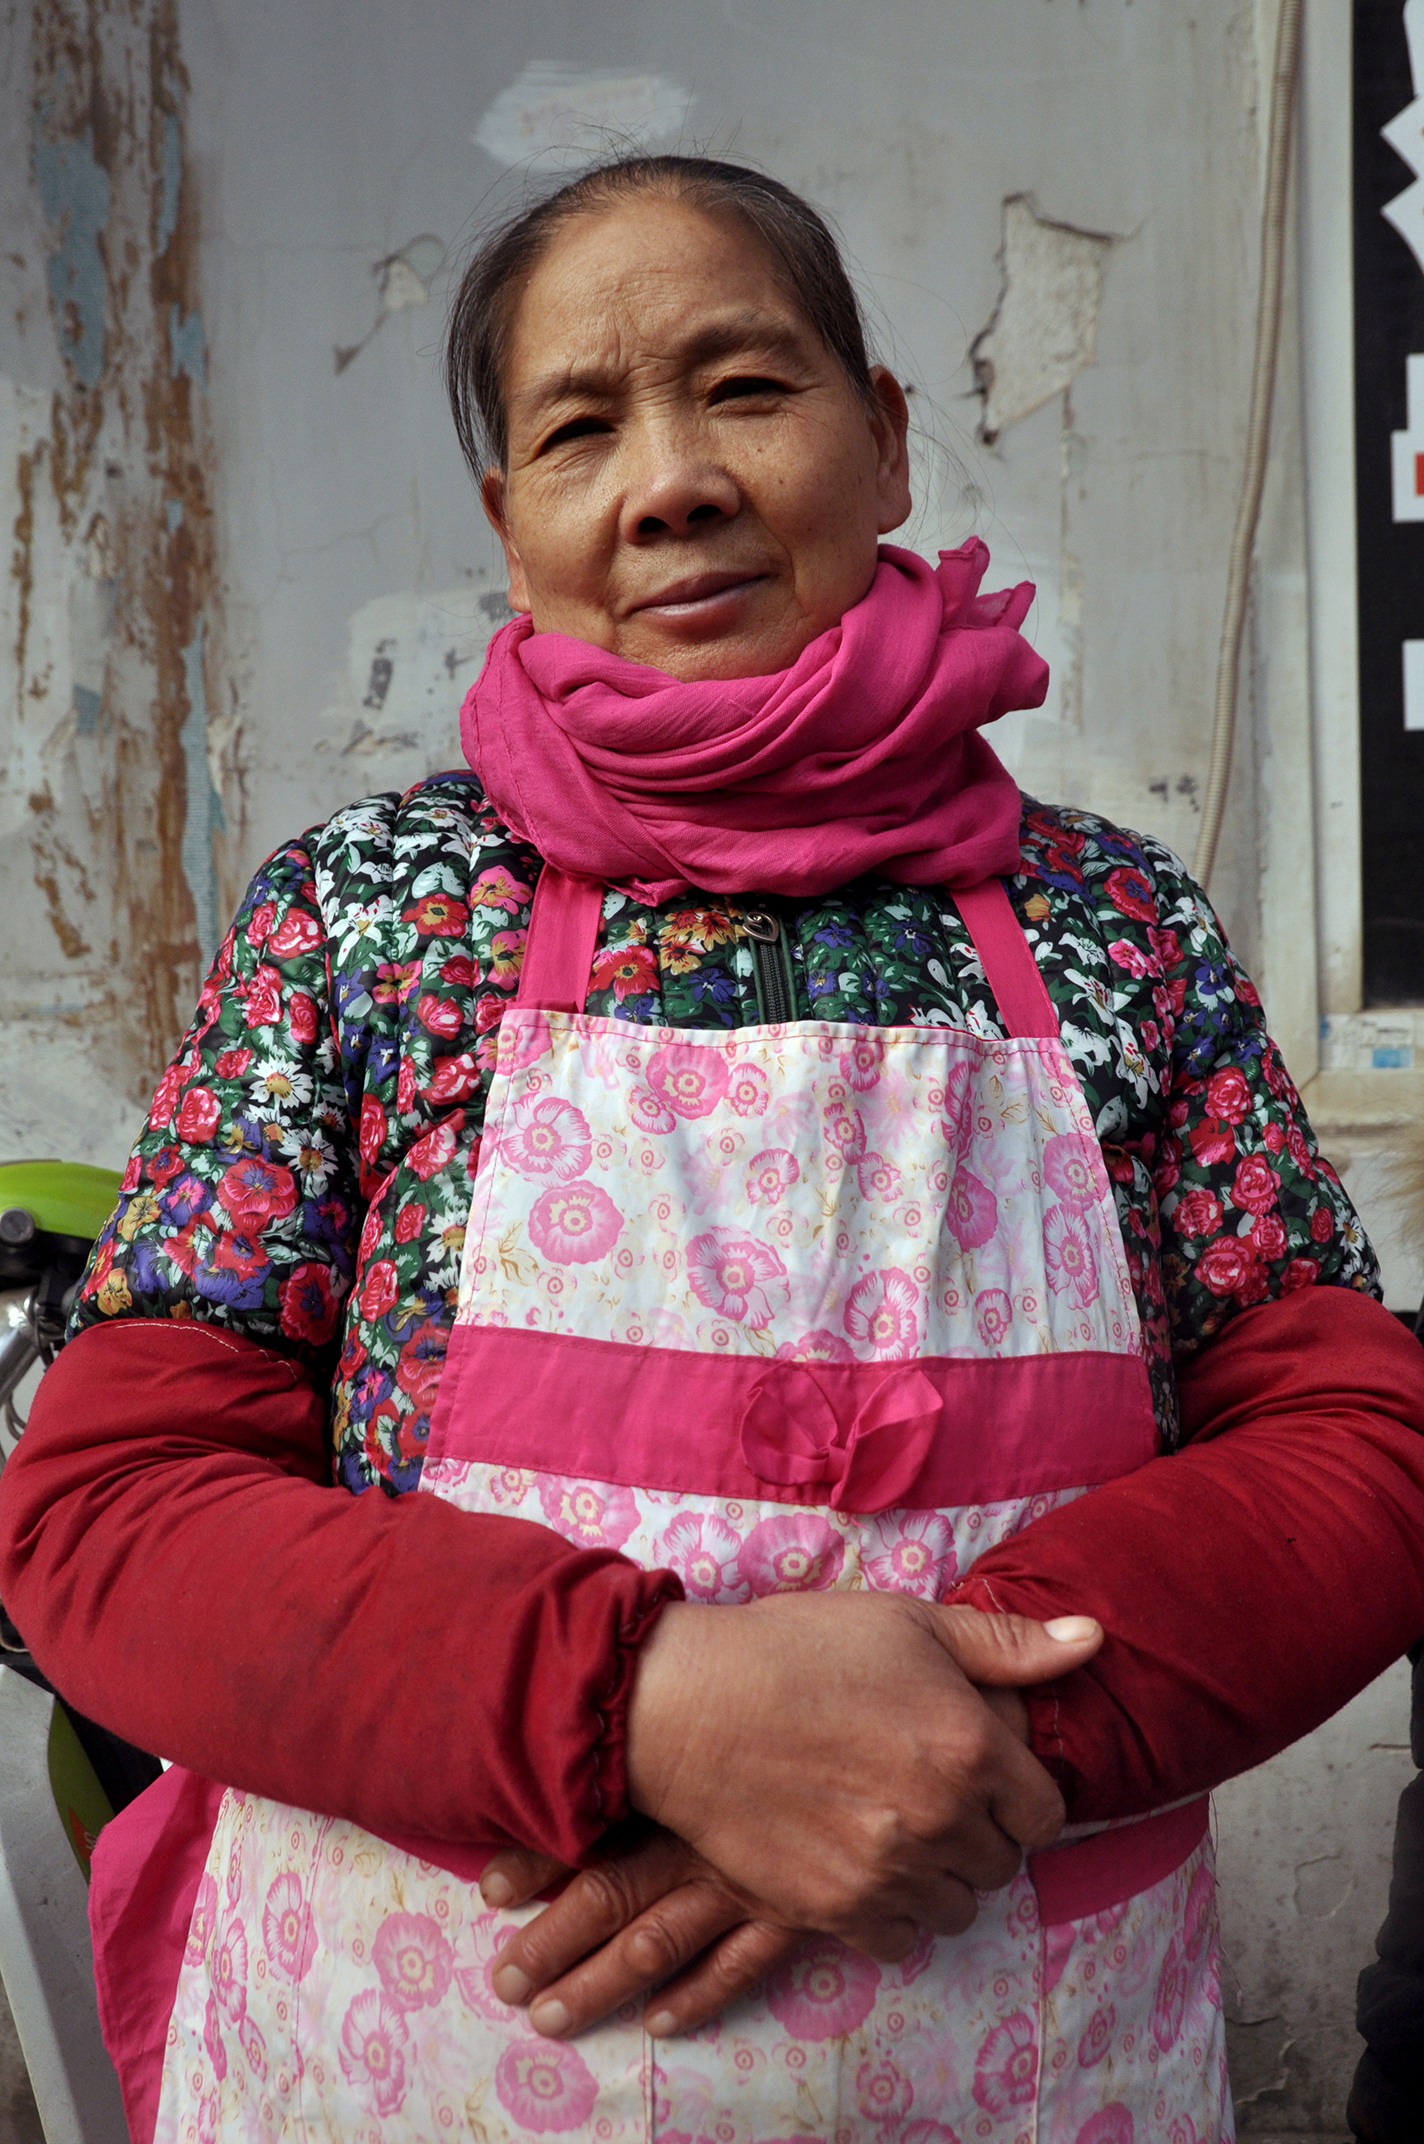  Restaurant proprietor, Wuhan, 2015 